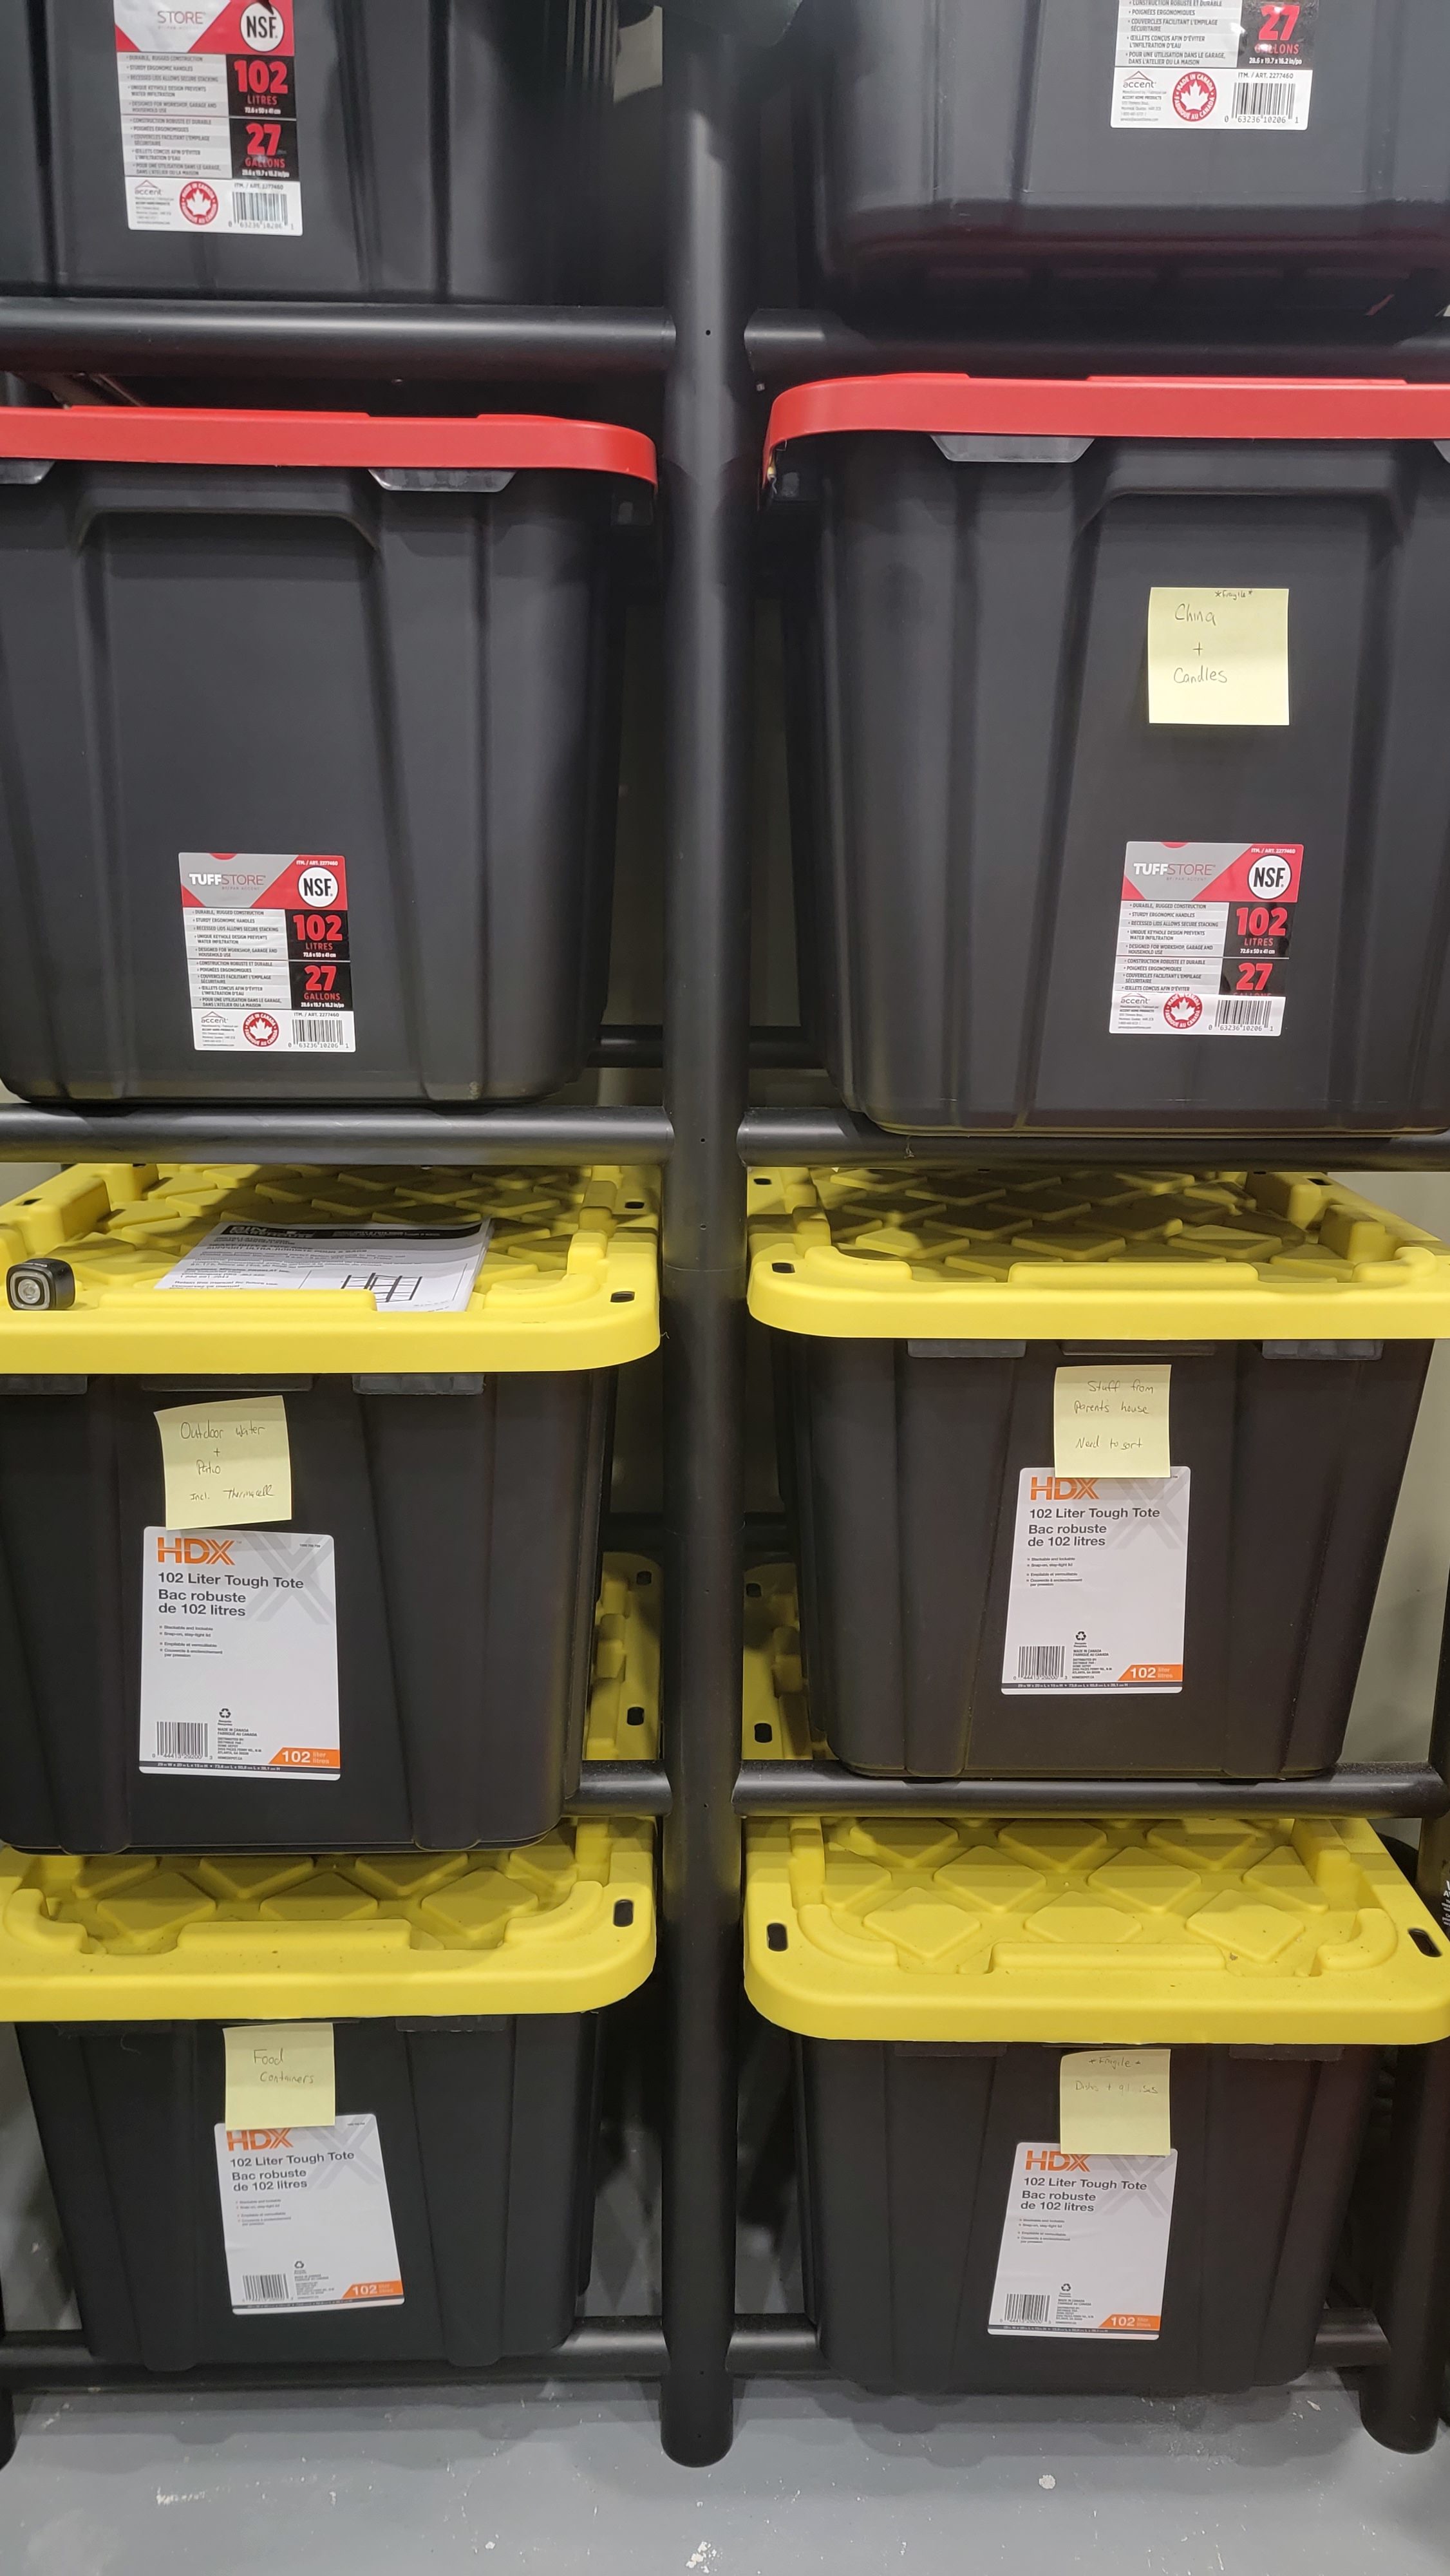 Home depot vs. Costco 27 gallon storage containers 